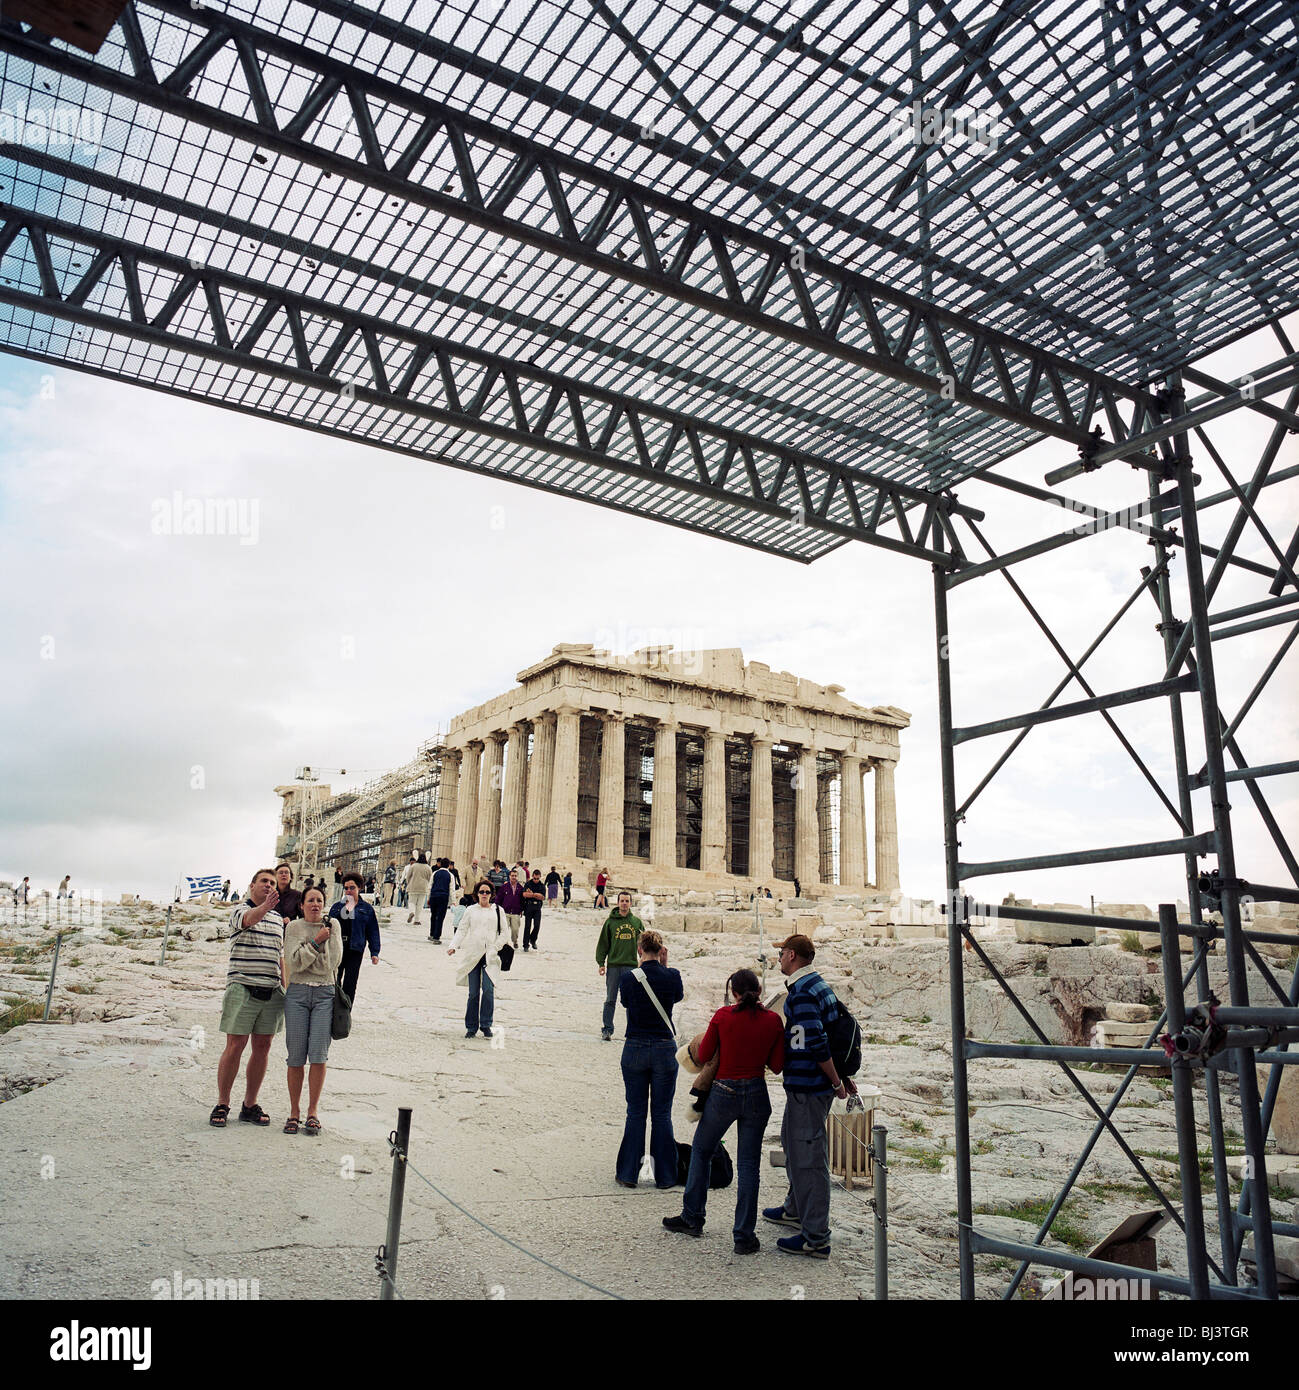 Die antike Parthenon (ca. 400 v. Chr.) sitzt auf Akropolis Hügel umgeben von globalen Touristen und Gerüstbau. Stockfoto